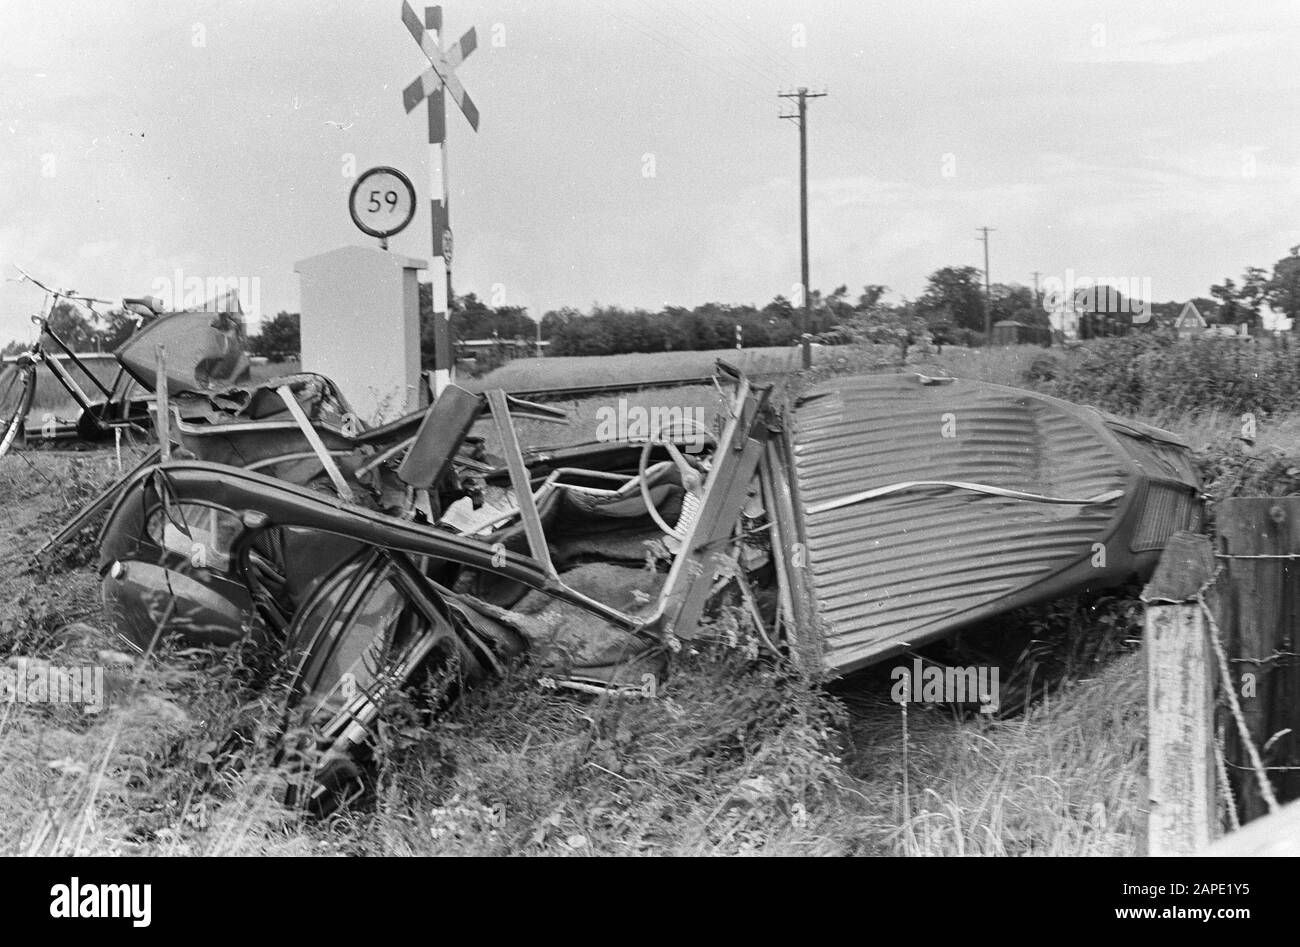 Auto beschlagnahmt von Güterzug in Dalen (Drenthe) Datum: 6. August 1967 Ort: Dalen, Drenthe Stichwörter: Autos, Güterzüge, Unfälle Stockfoto